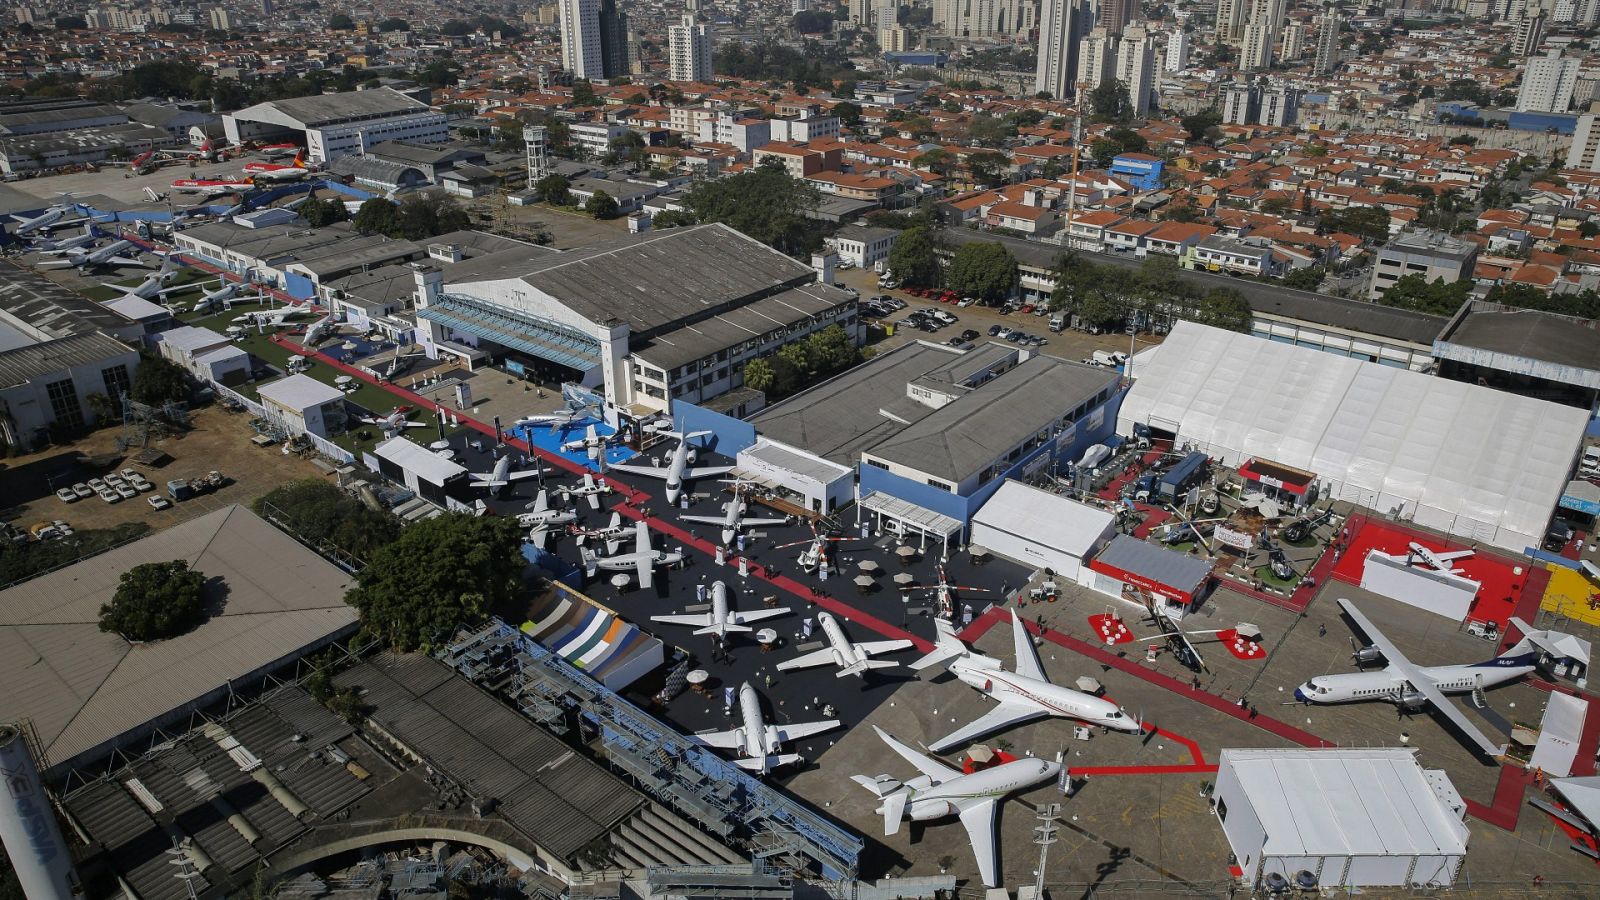 Fotografía de archivo fechada el 11 de agosto de 2015 del aeropuerto de Congonhas, Sao Paulo